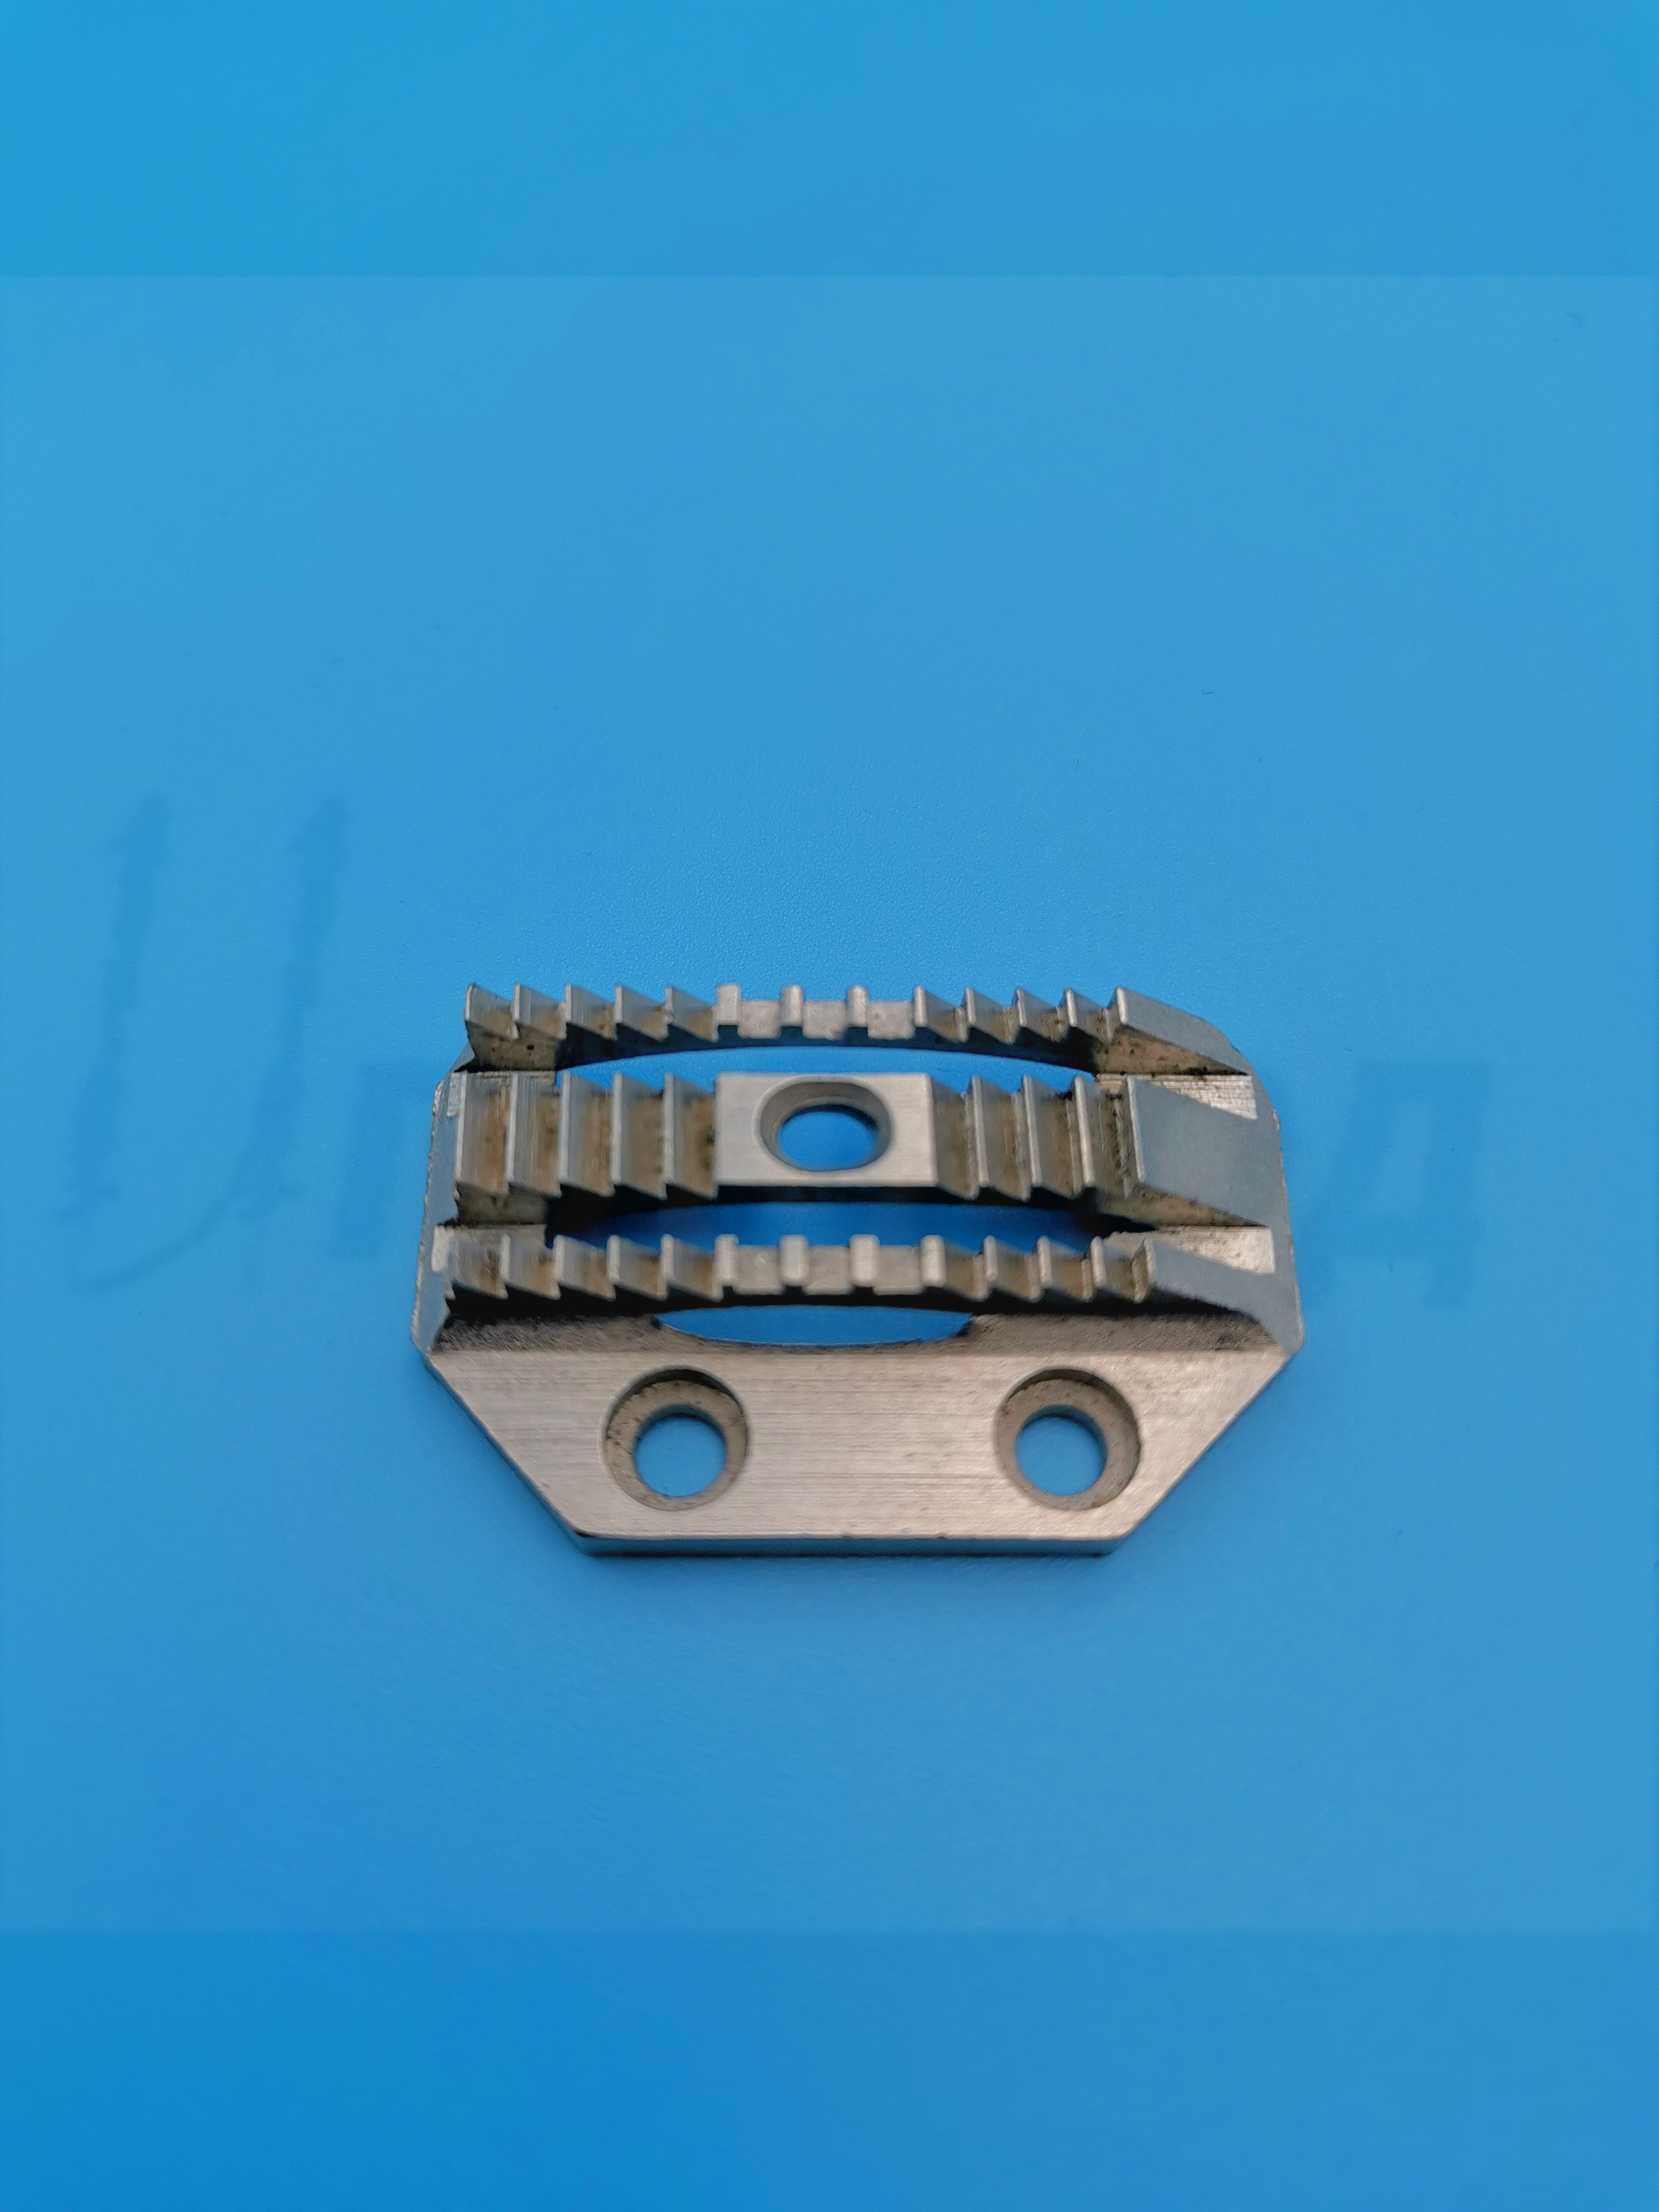 Двигатель ткани B1609-415-HOB (игольное продвижение, тяж.) крупный зуб